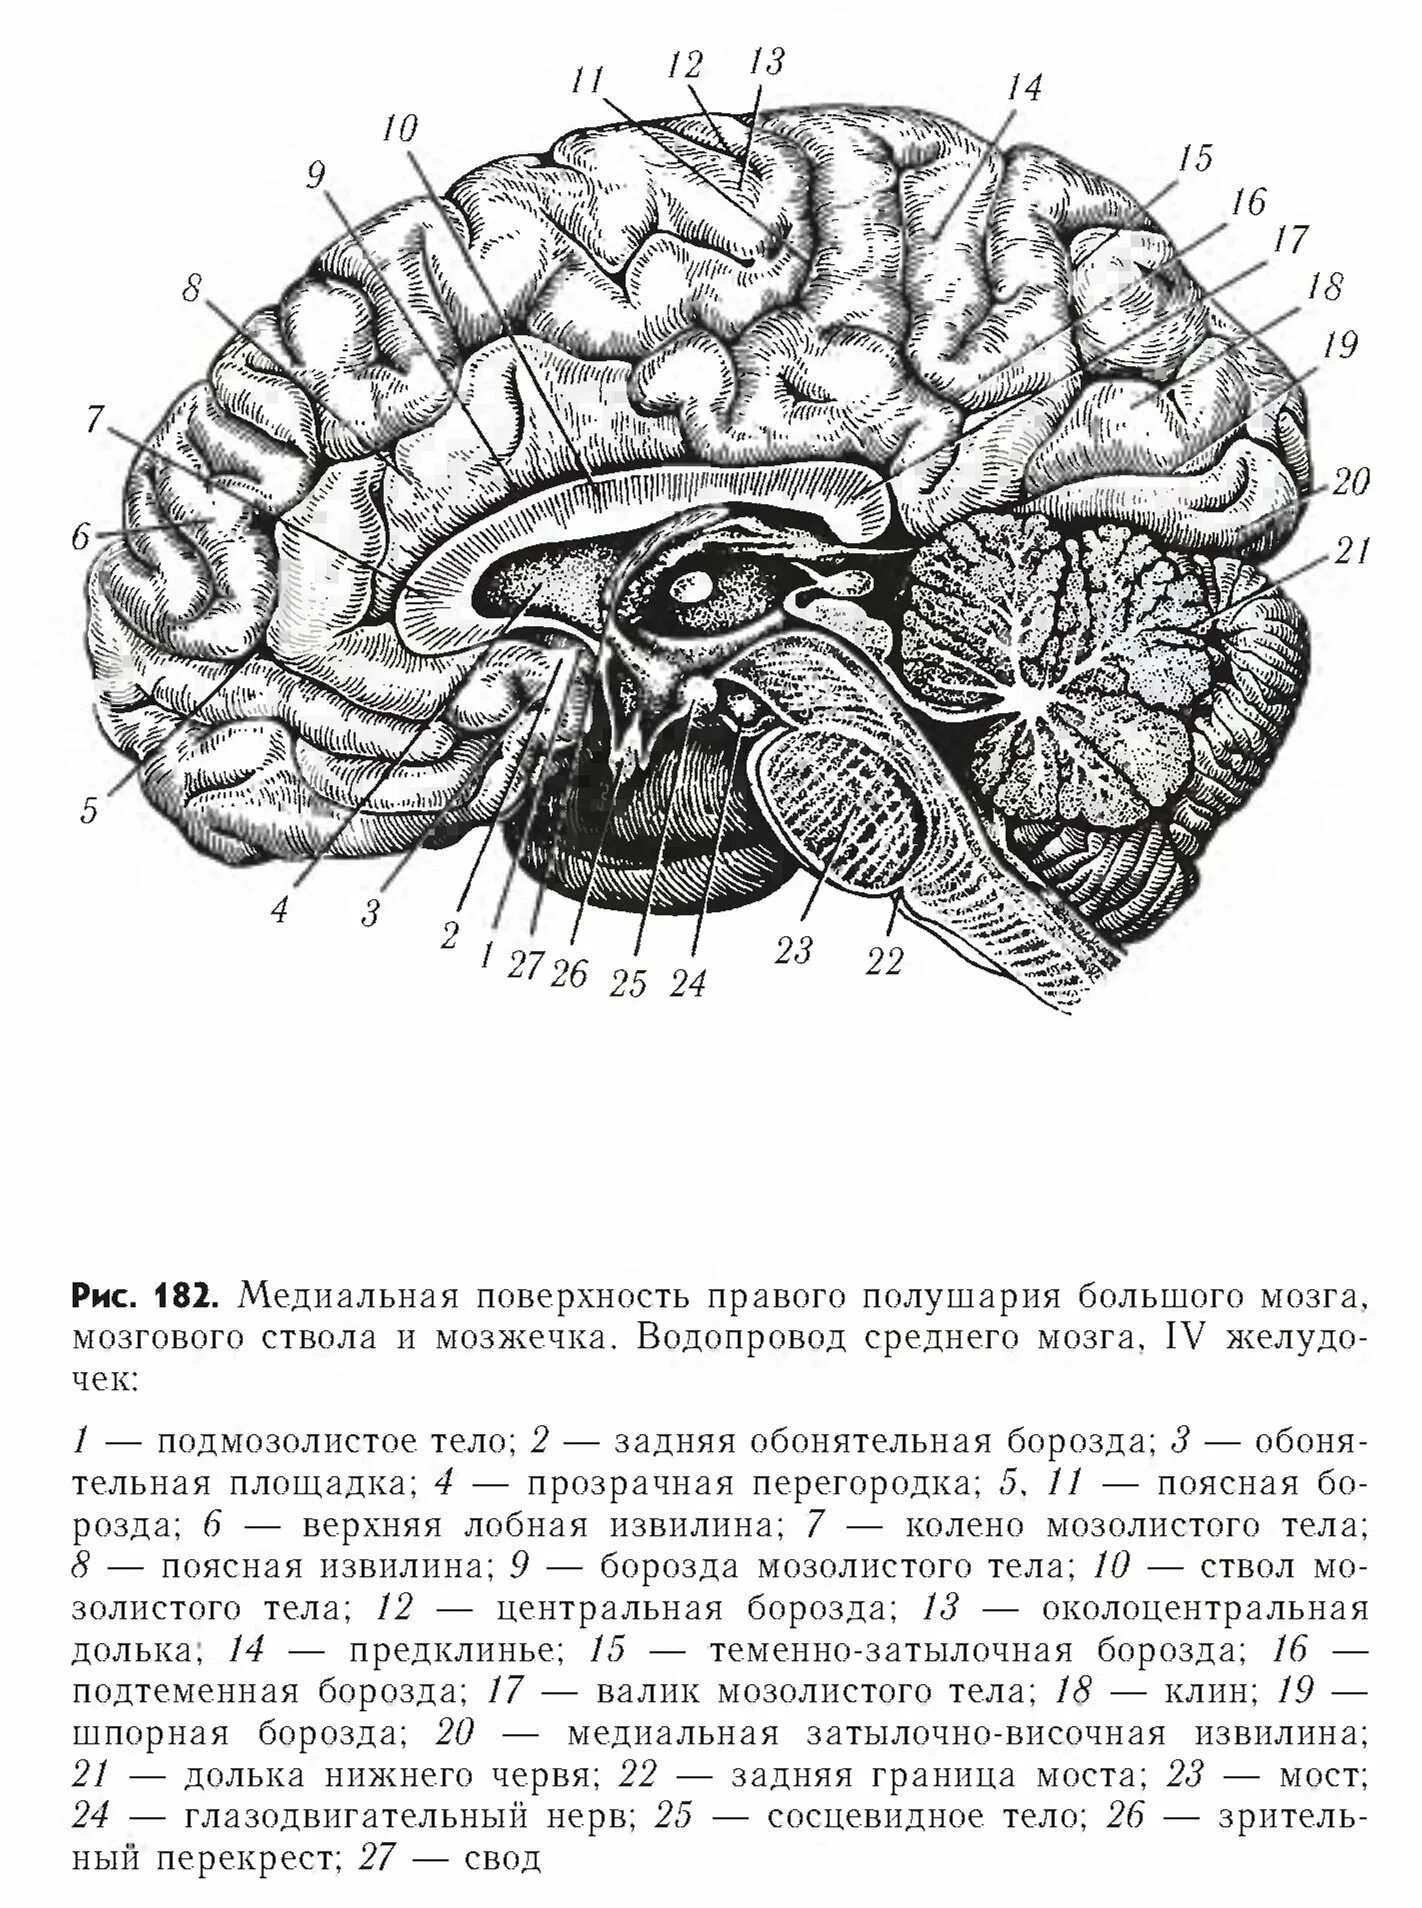 Головной мозг границы. Медиальная поверхность мозга. Медиальная поверхность головного мозга анатомия. Медиальная поверхность головного мозга рисунок. Медиальный разрез головного мозга.